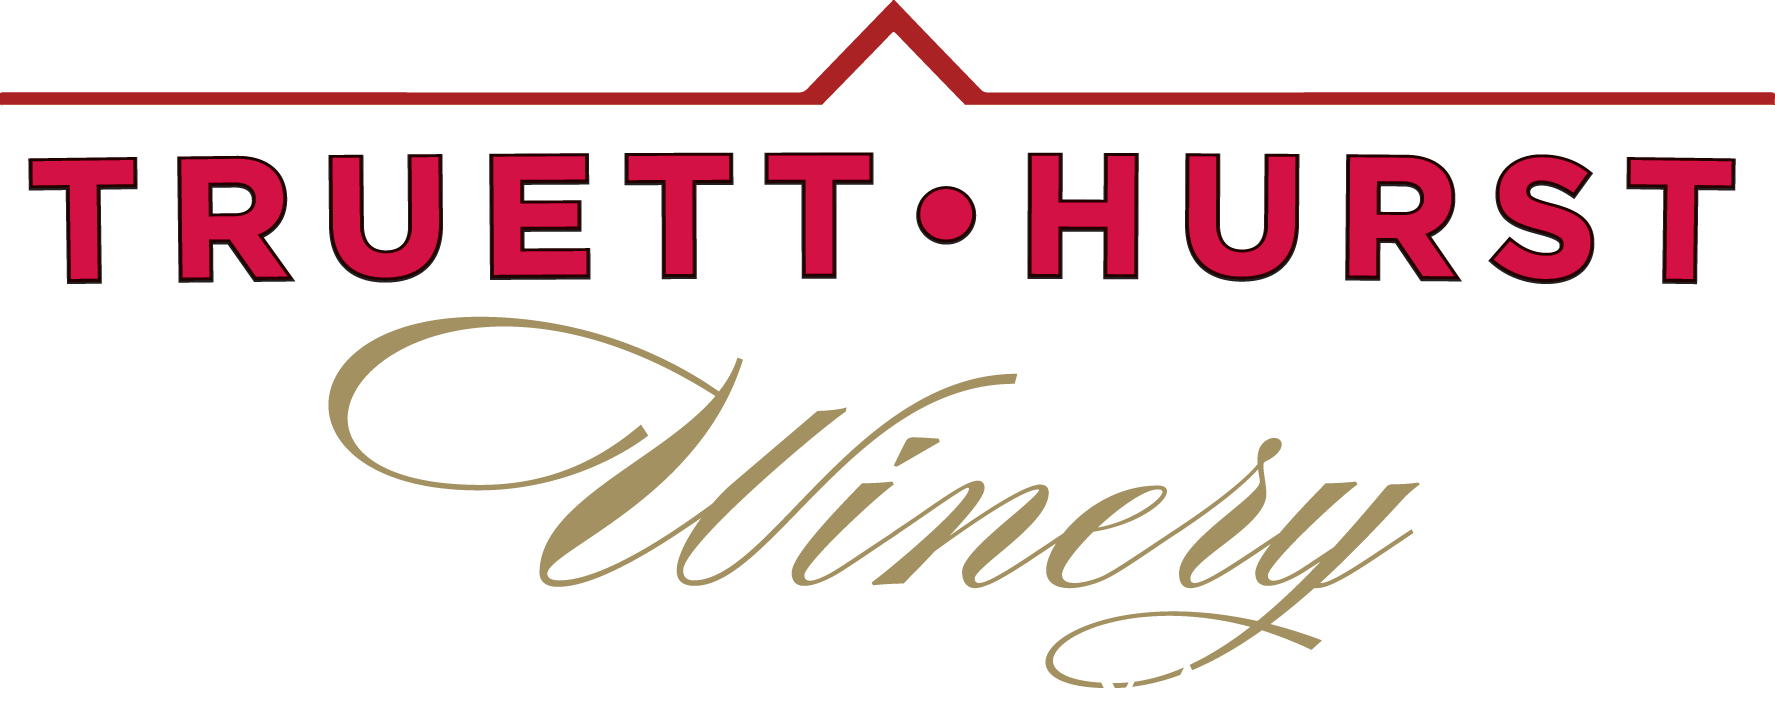 truett-hurst-logo (1).png